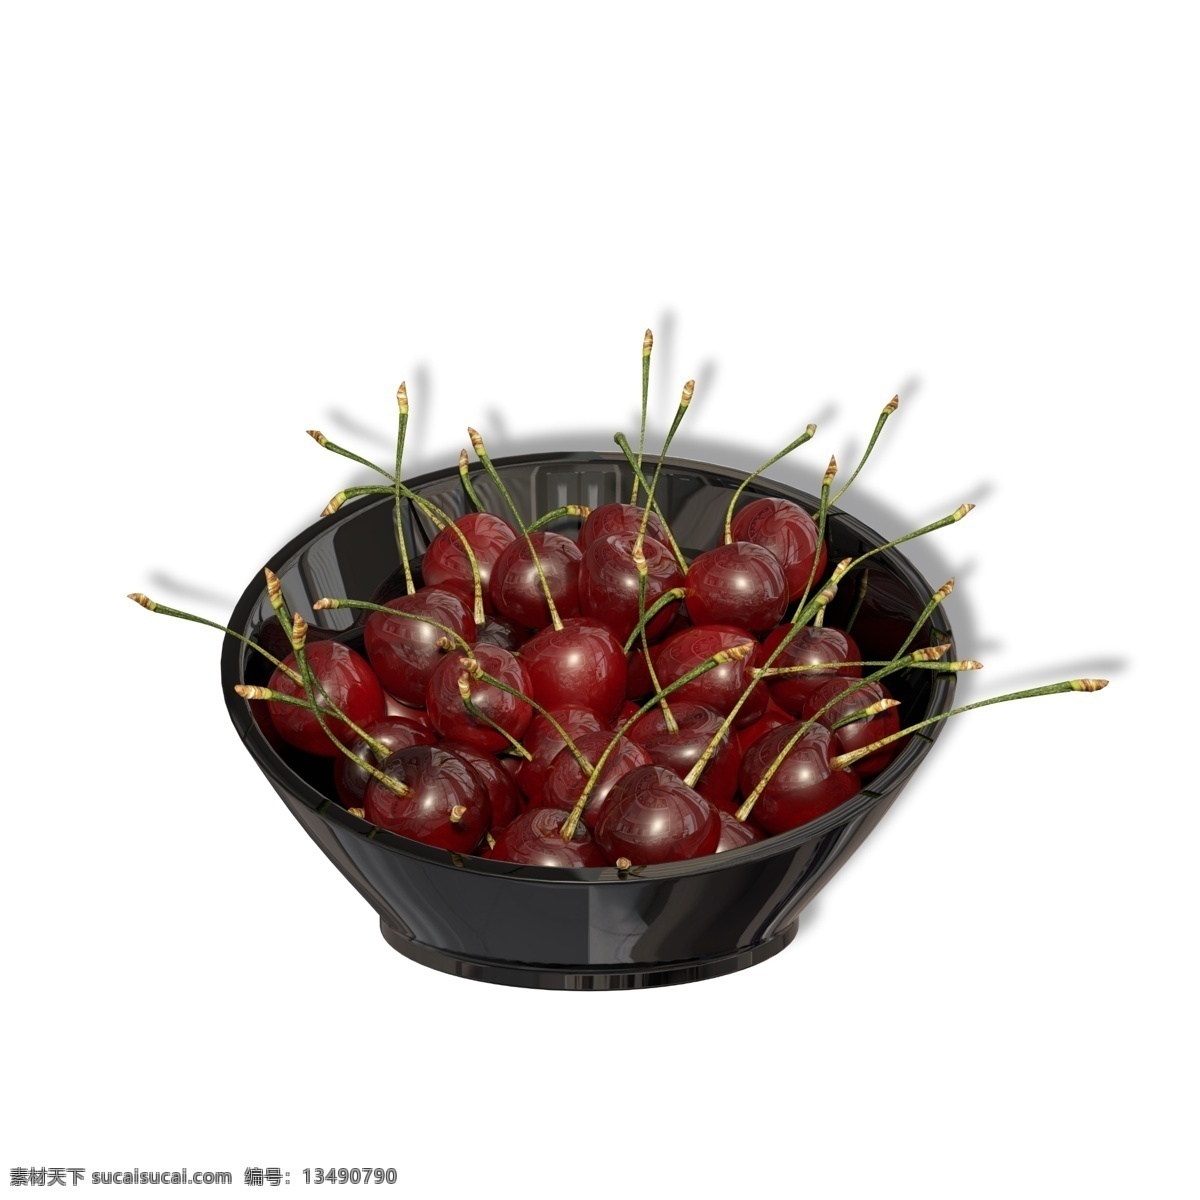 黑色 托盘 红色 樱桃 水果 果盘 陶瓷 碗